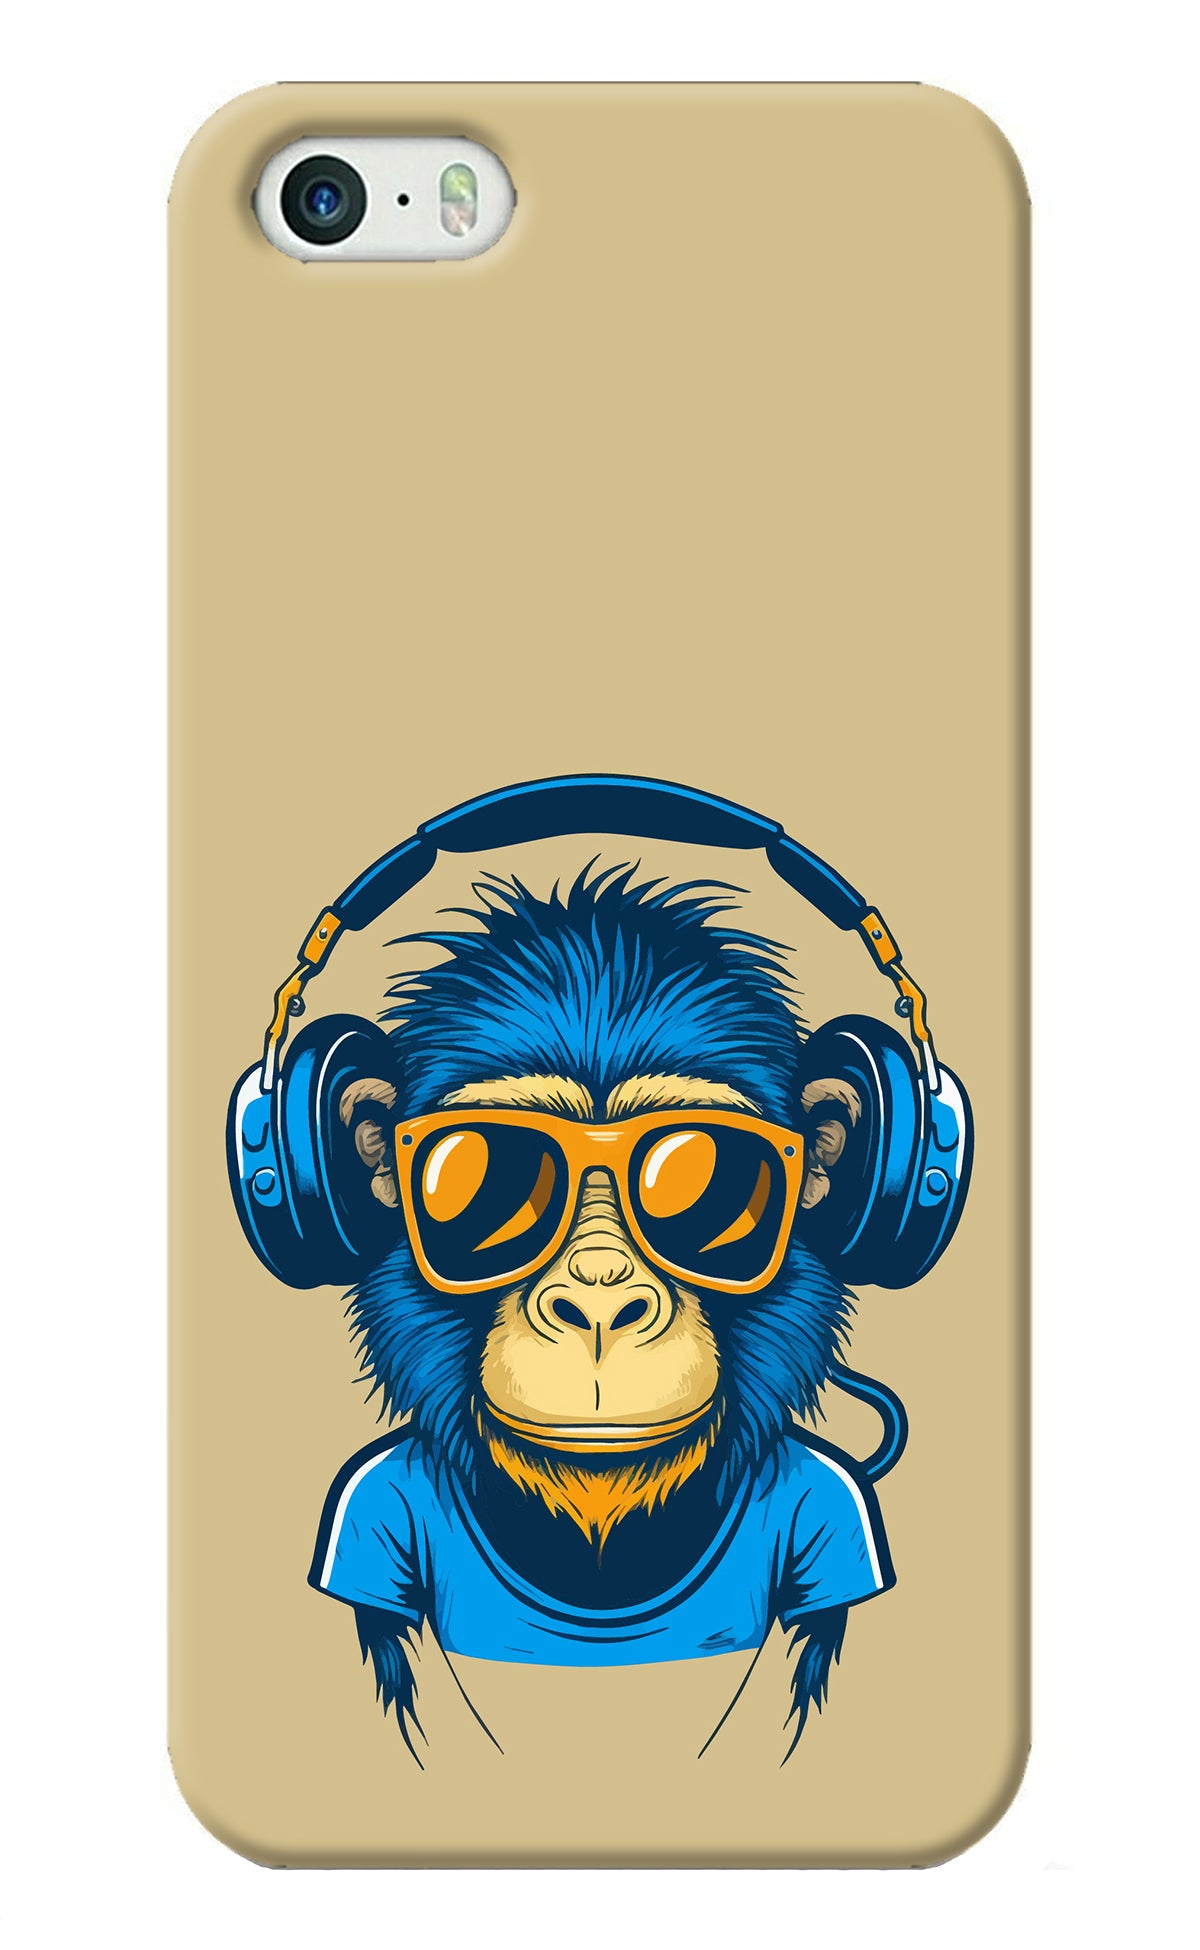 Monkey Headphone iPhone 5/5s Back Cover